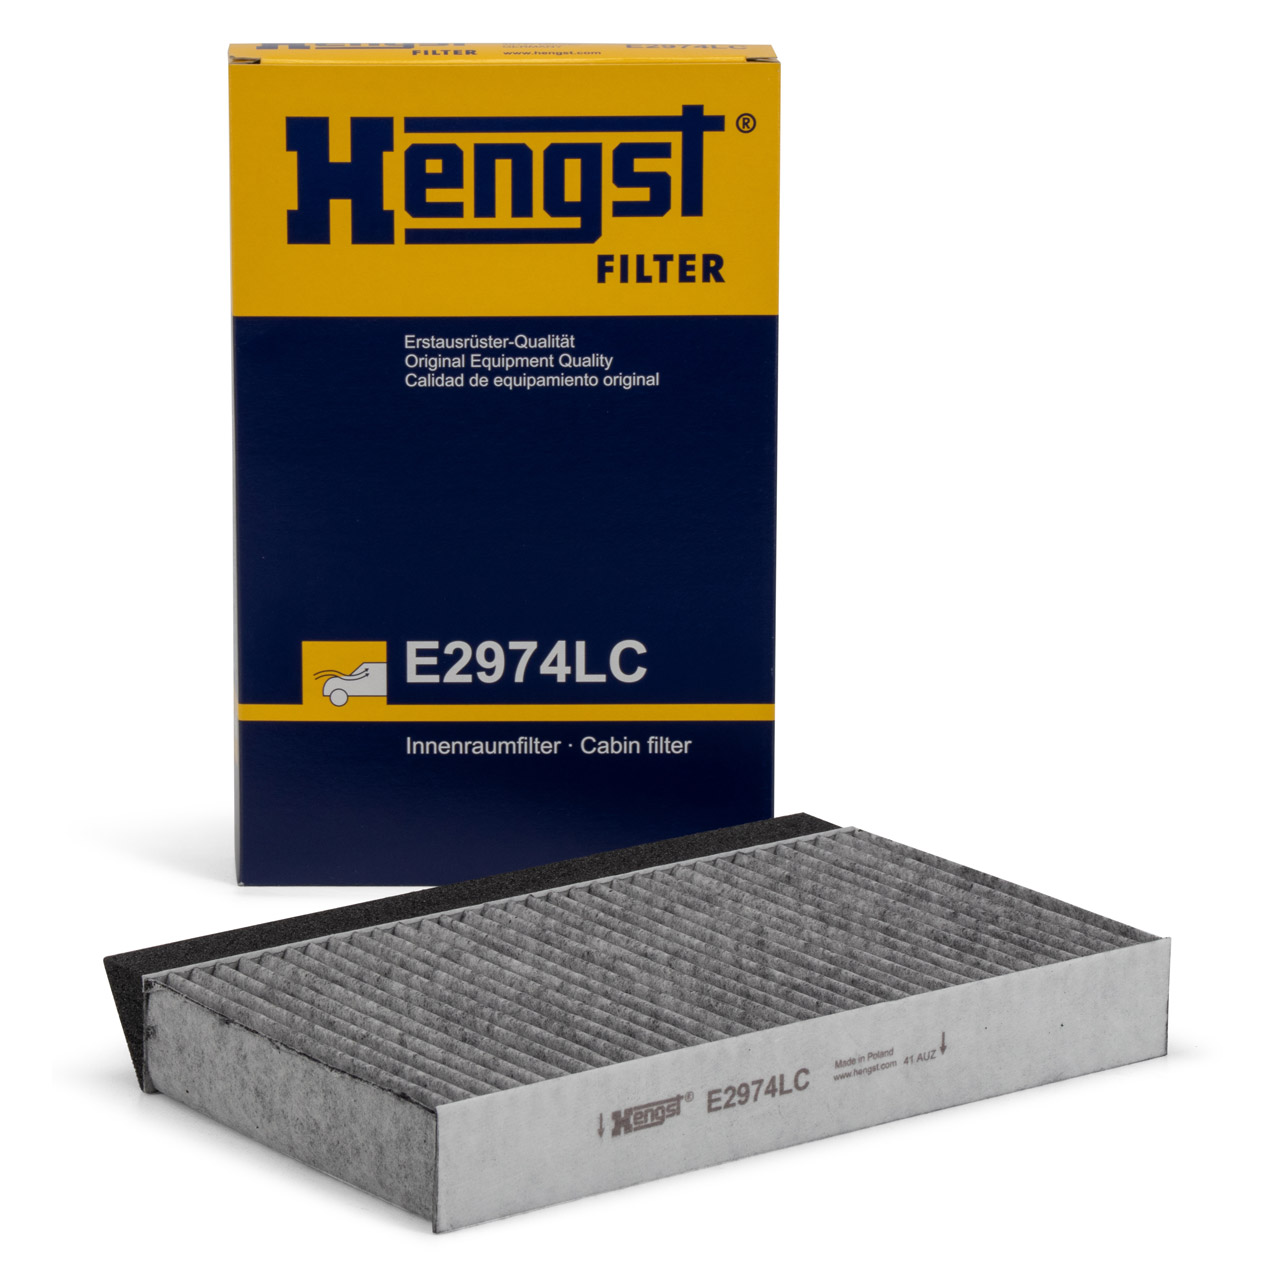 HENGST E2974LC Innenraumfilter Aktivkohle für RENAULT FLUENCE MEGANE III MODUS